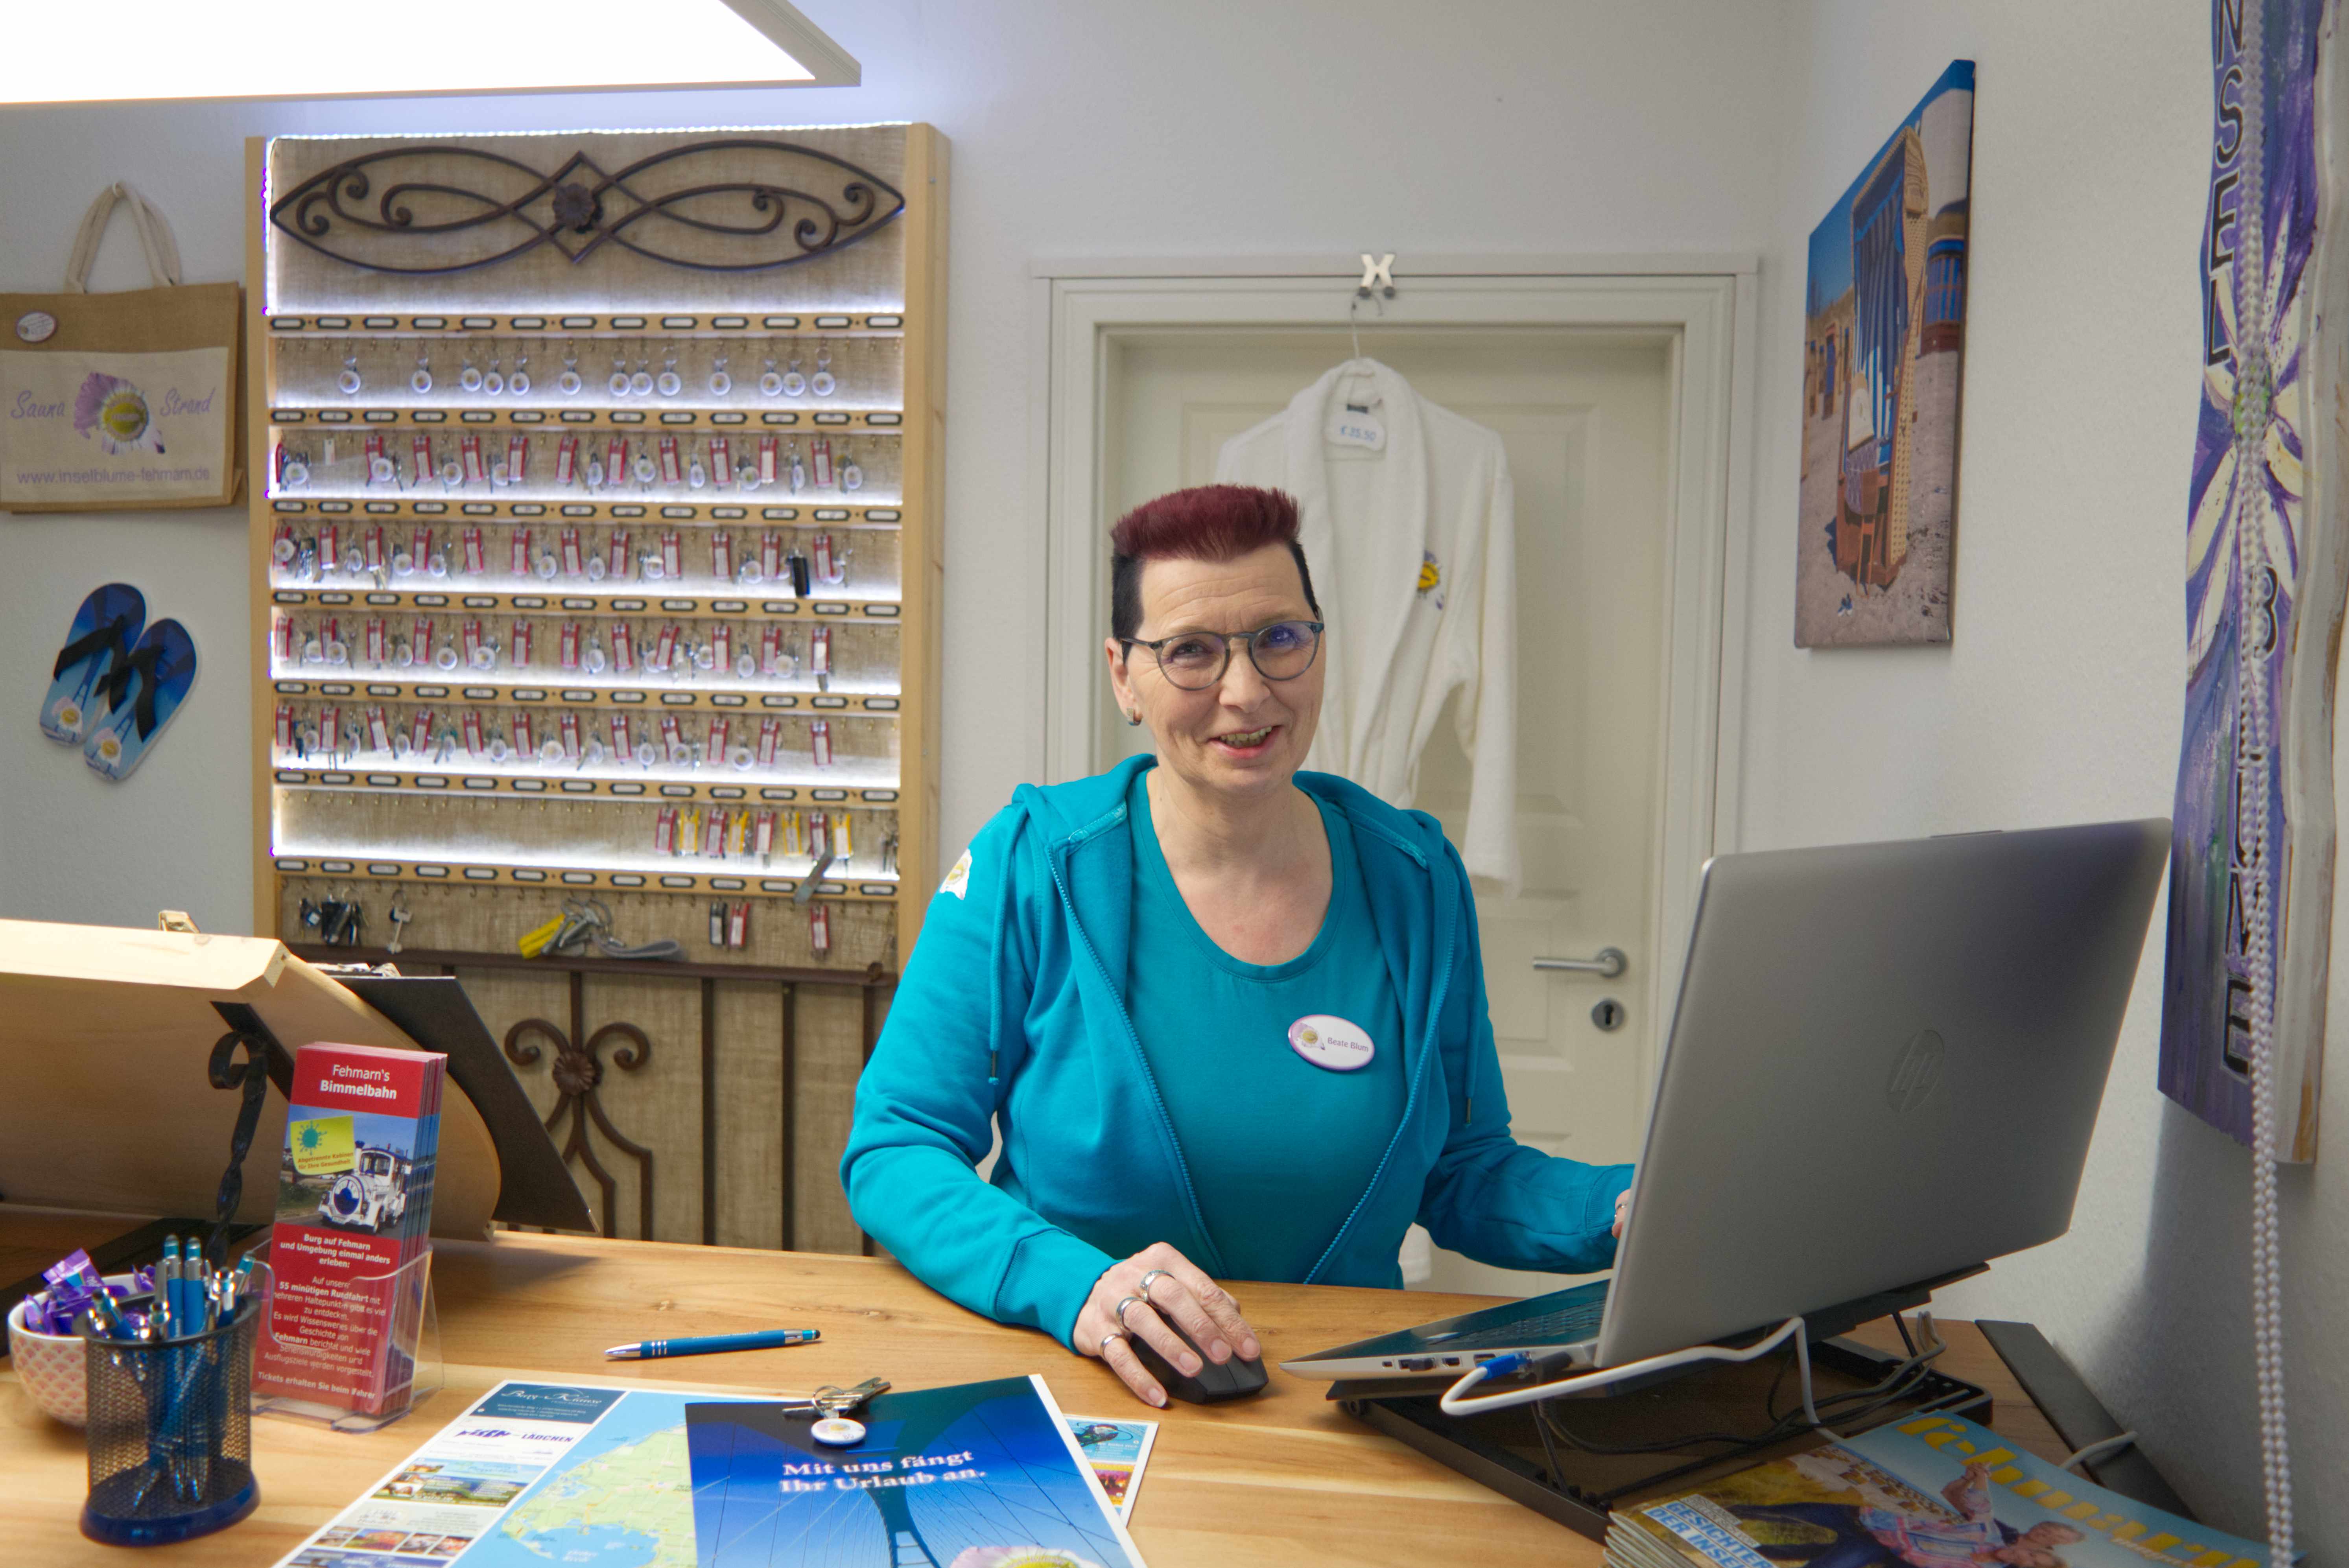 Frau Blum von der Ferienwohnungsvermittlung und Ferienhausvermittlung Inselblume Fehmarn im Büro in Burg auf Fehmarn